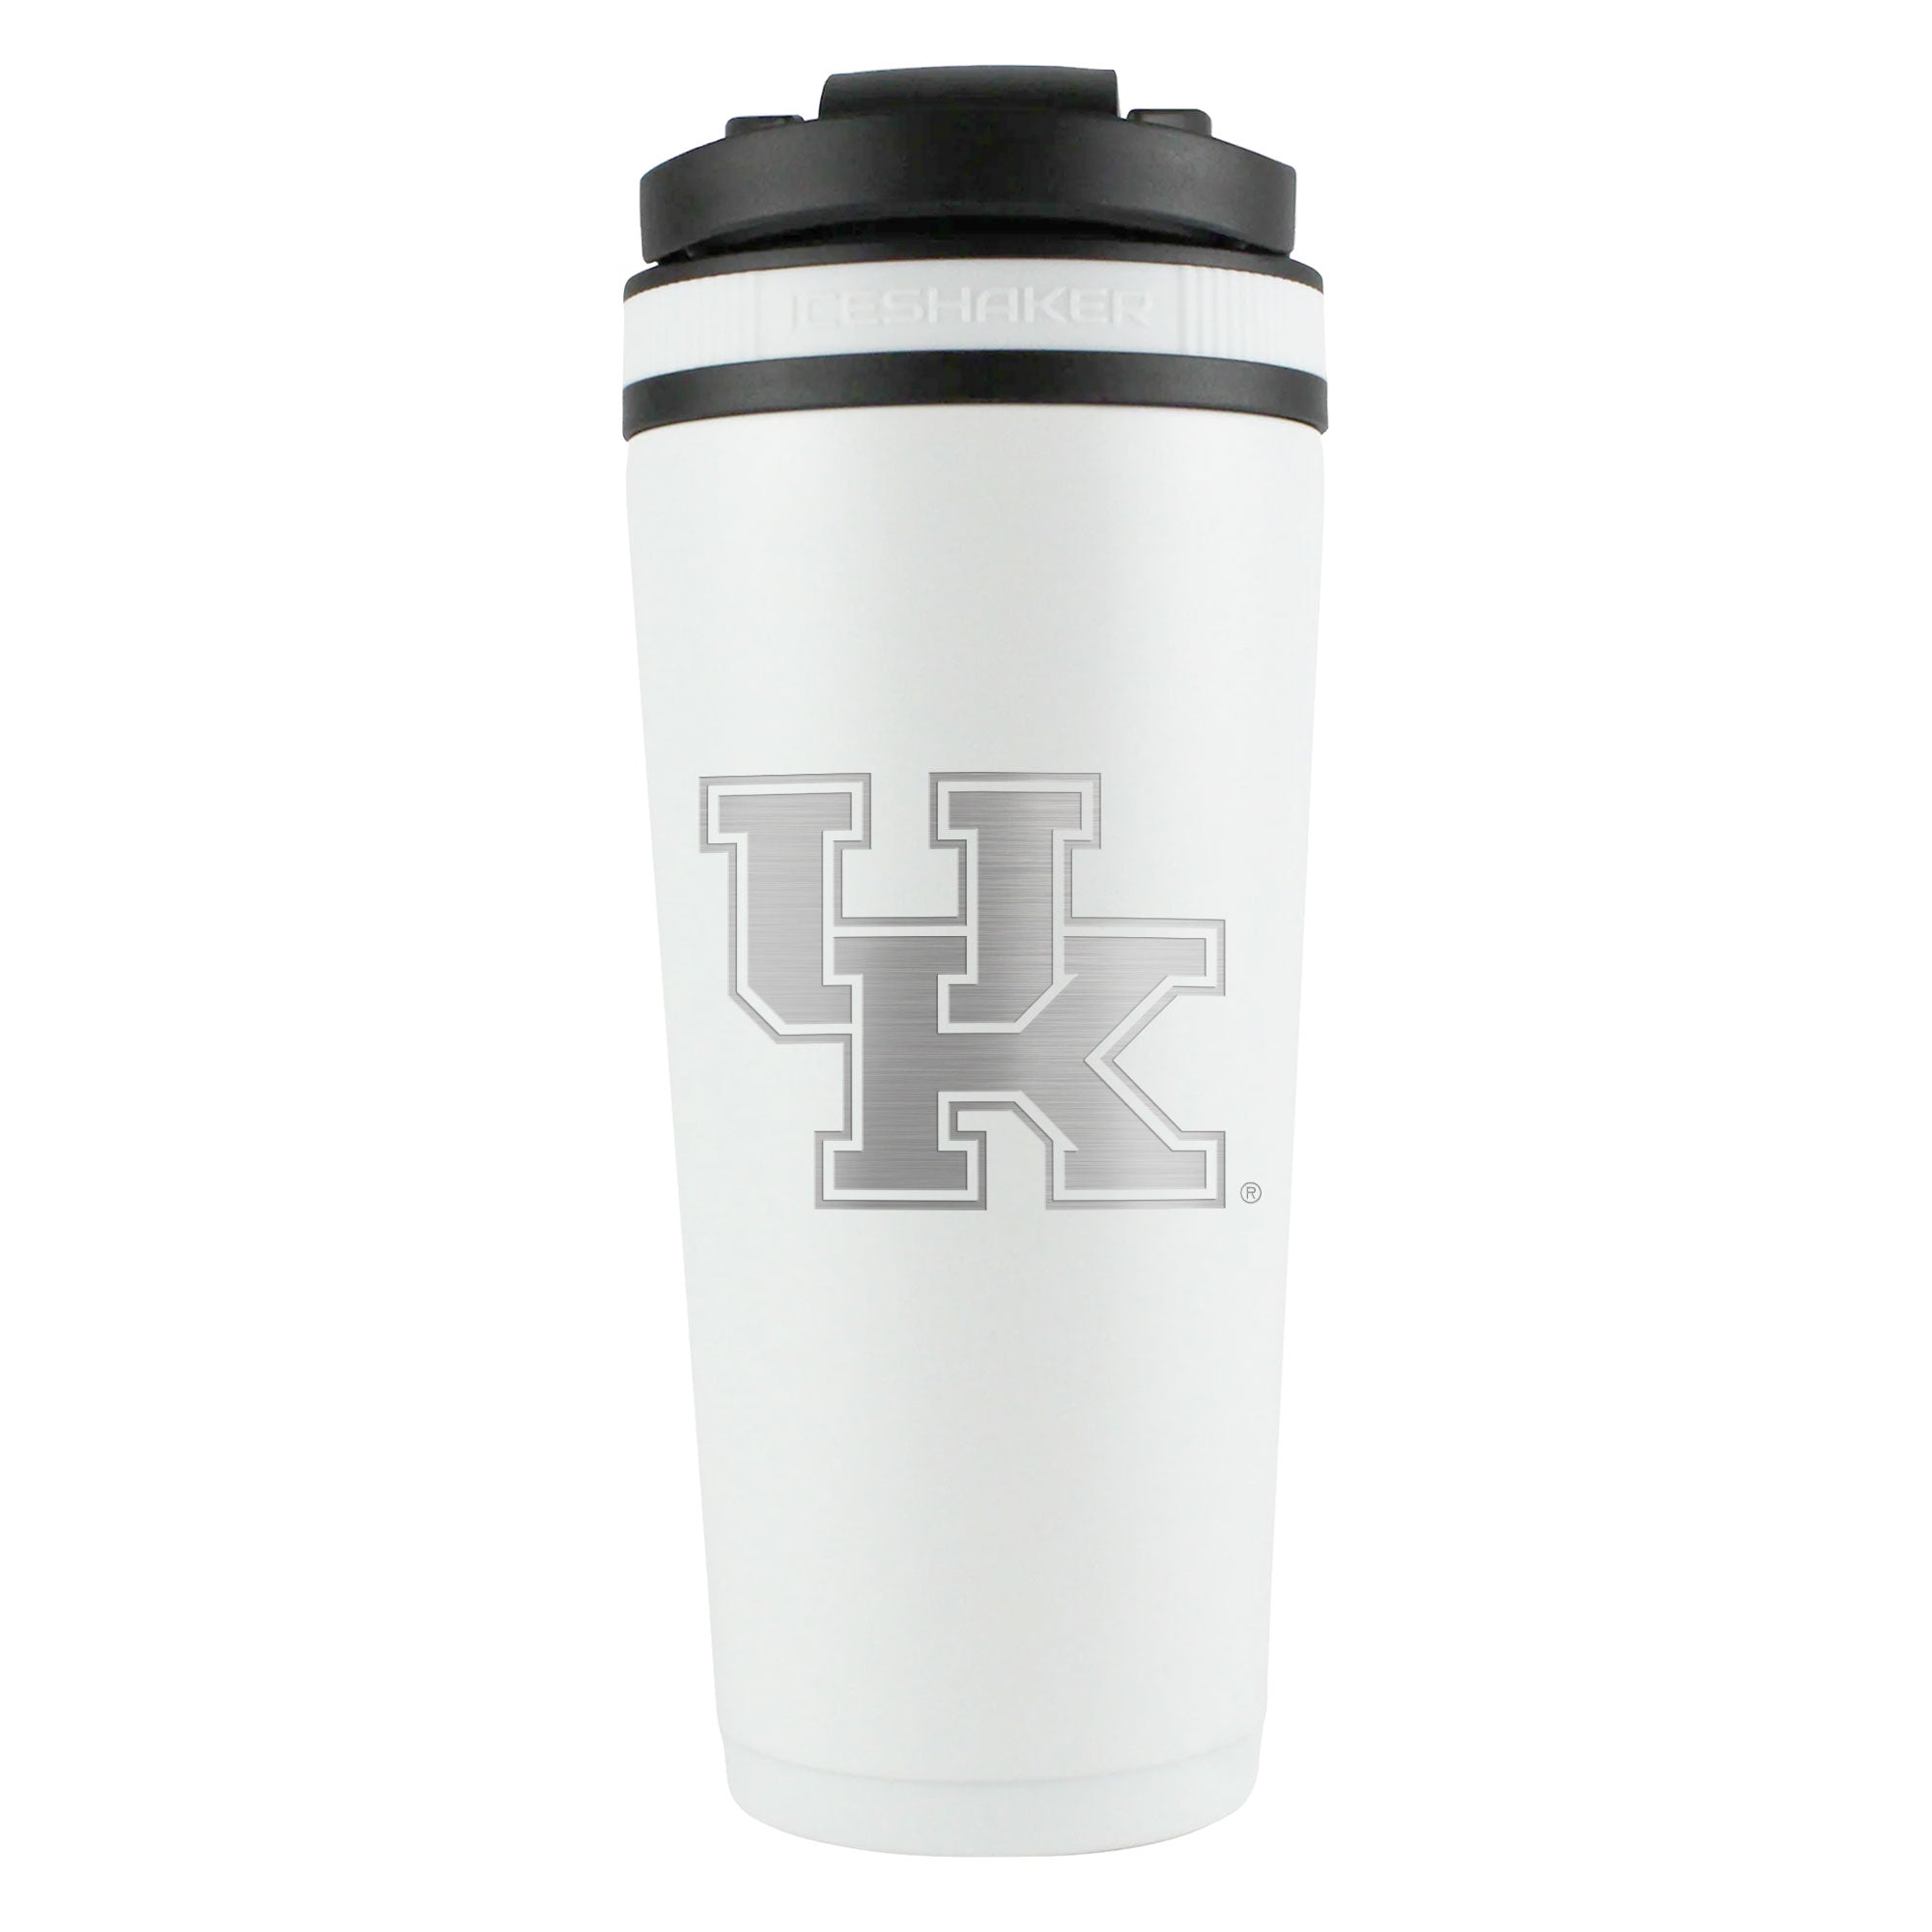 Officially Licensed University of Kentucky 26oz Ice Shaker - White